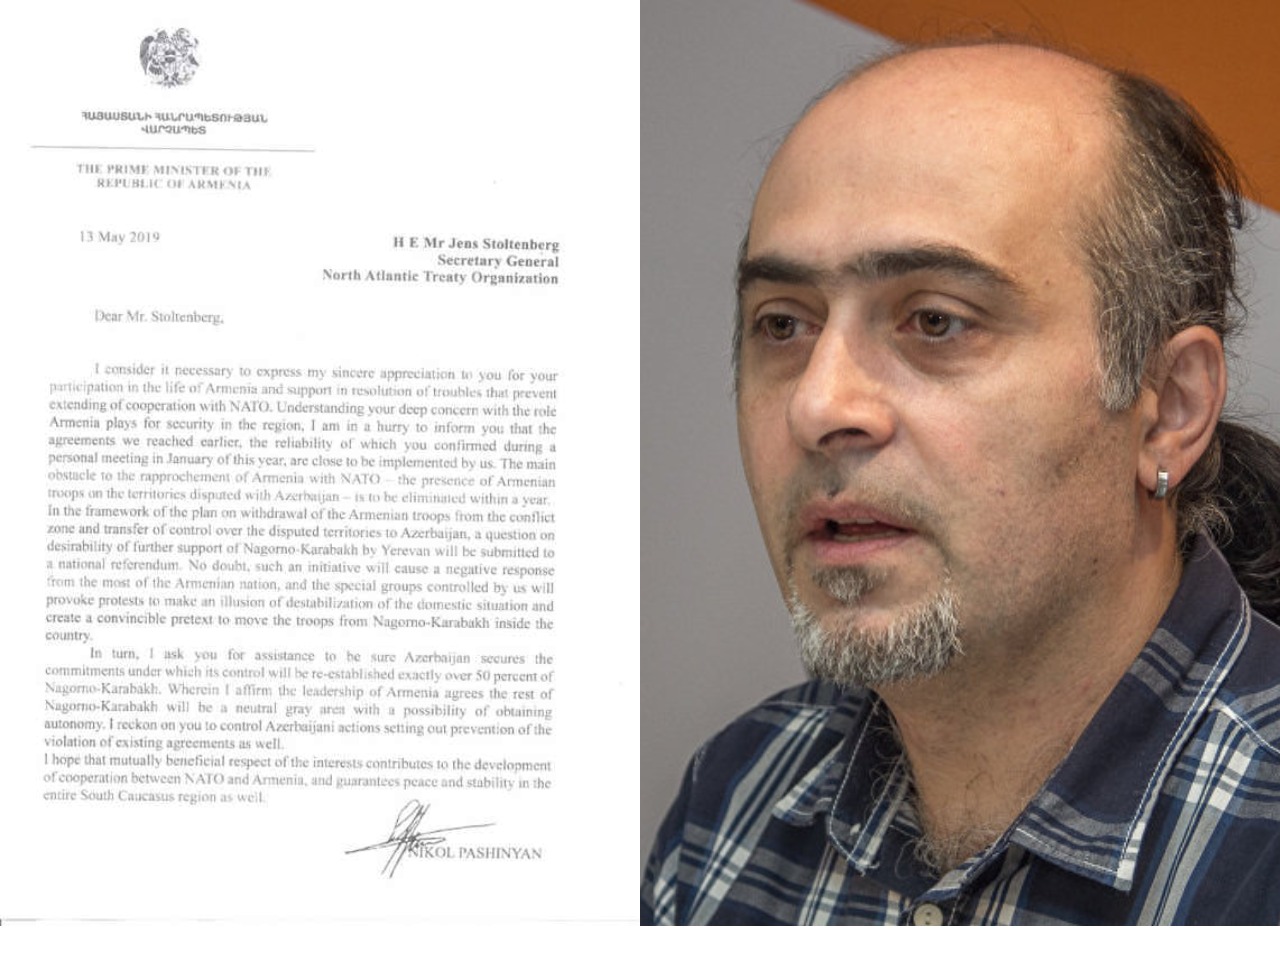 Внимание фейк: распространяется фальшивое письмо премьер-министра Армении руководству НАТО